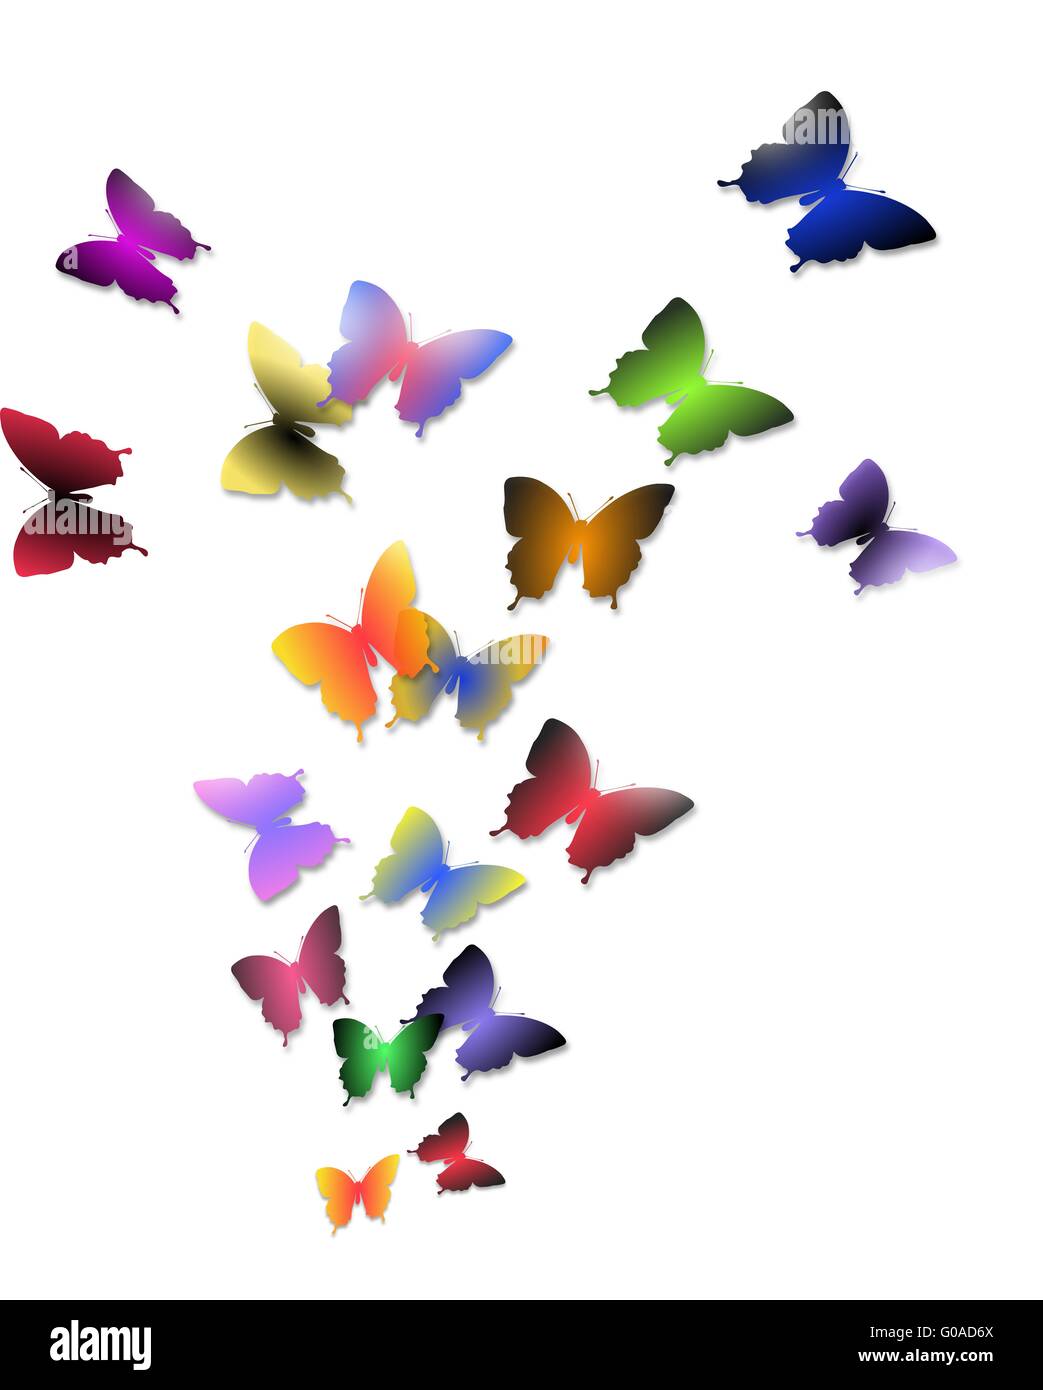 Ilustración de la bandada de mariposas coloridas aislado sobre un fondo blanco. Foto de stock